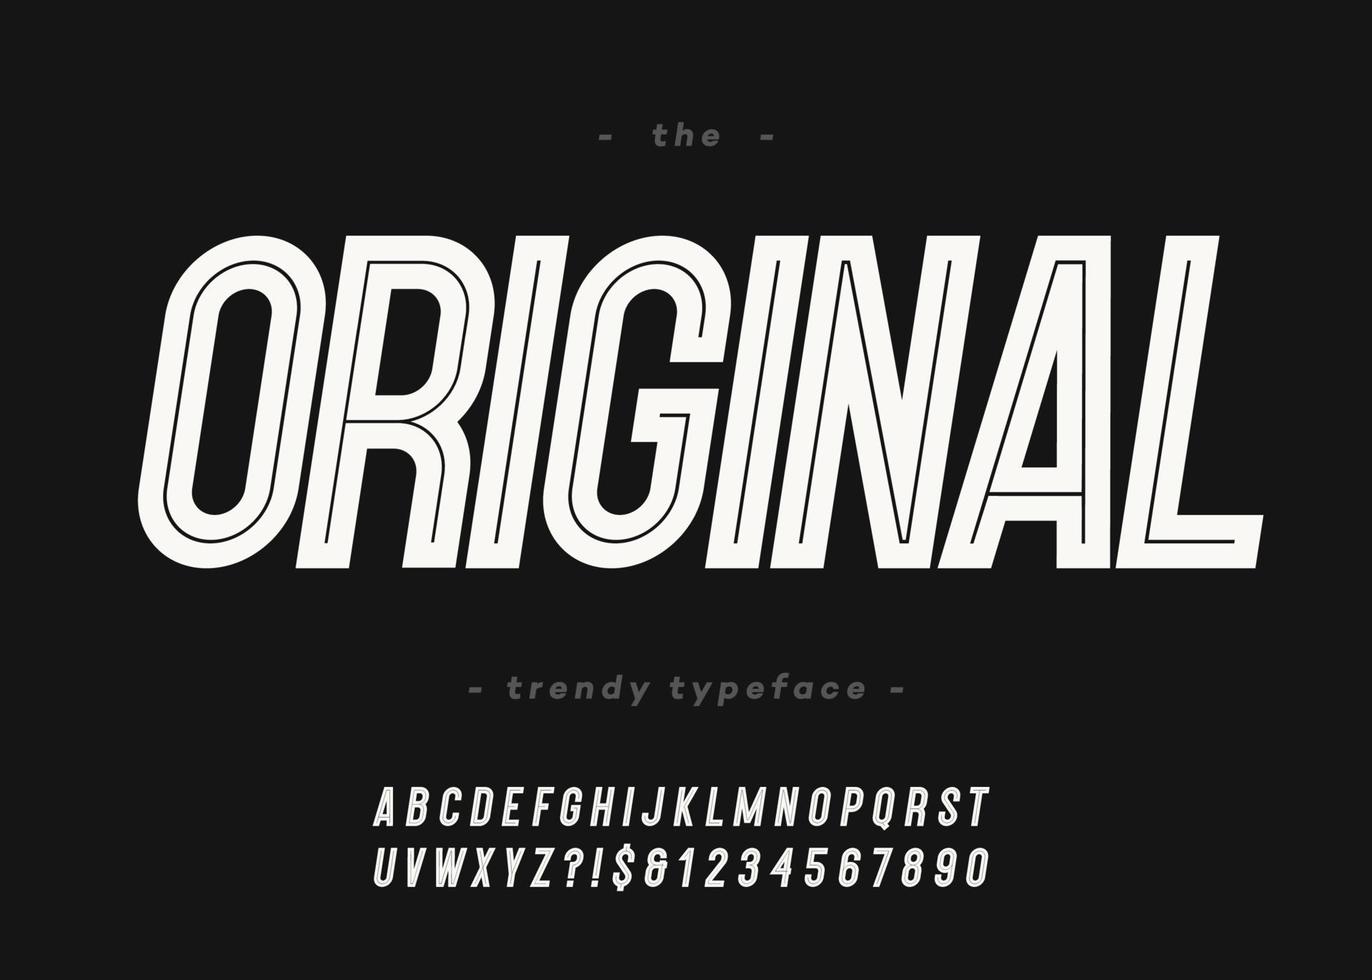 Vektor fett Originalschrift trendige Typografie